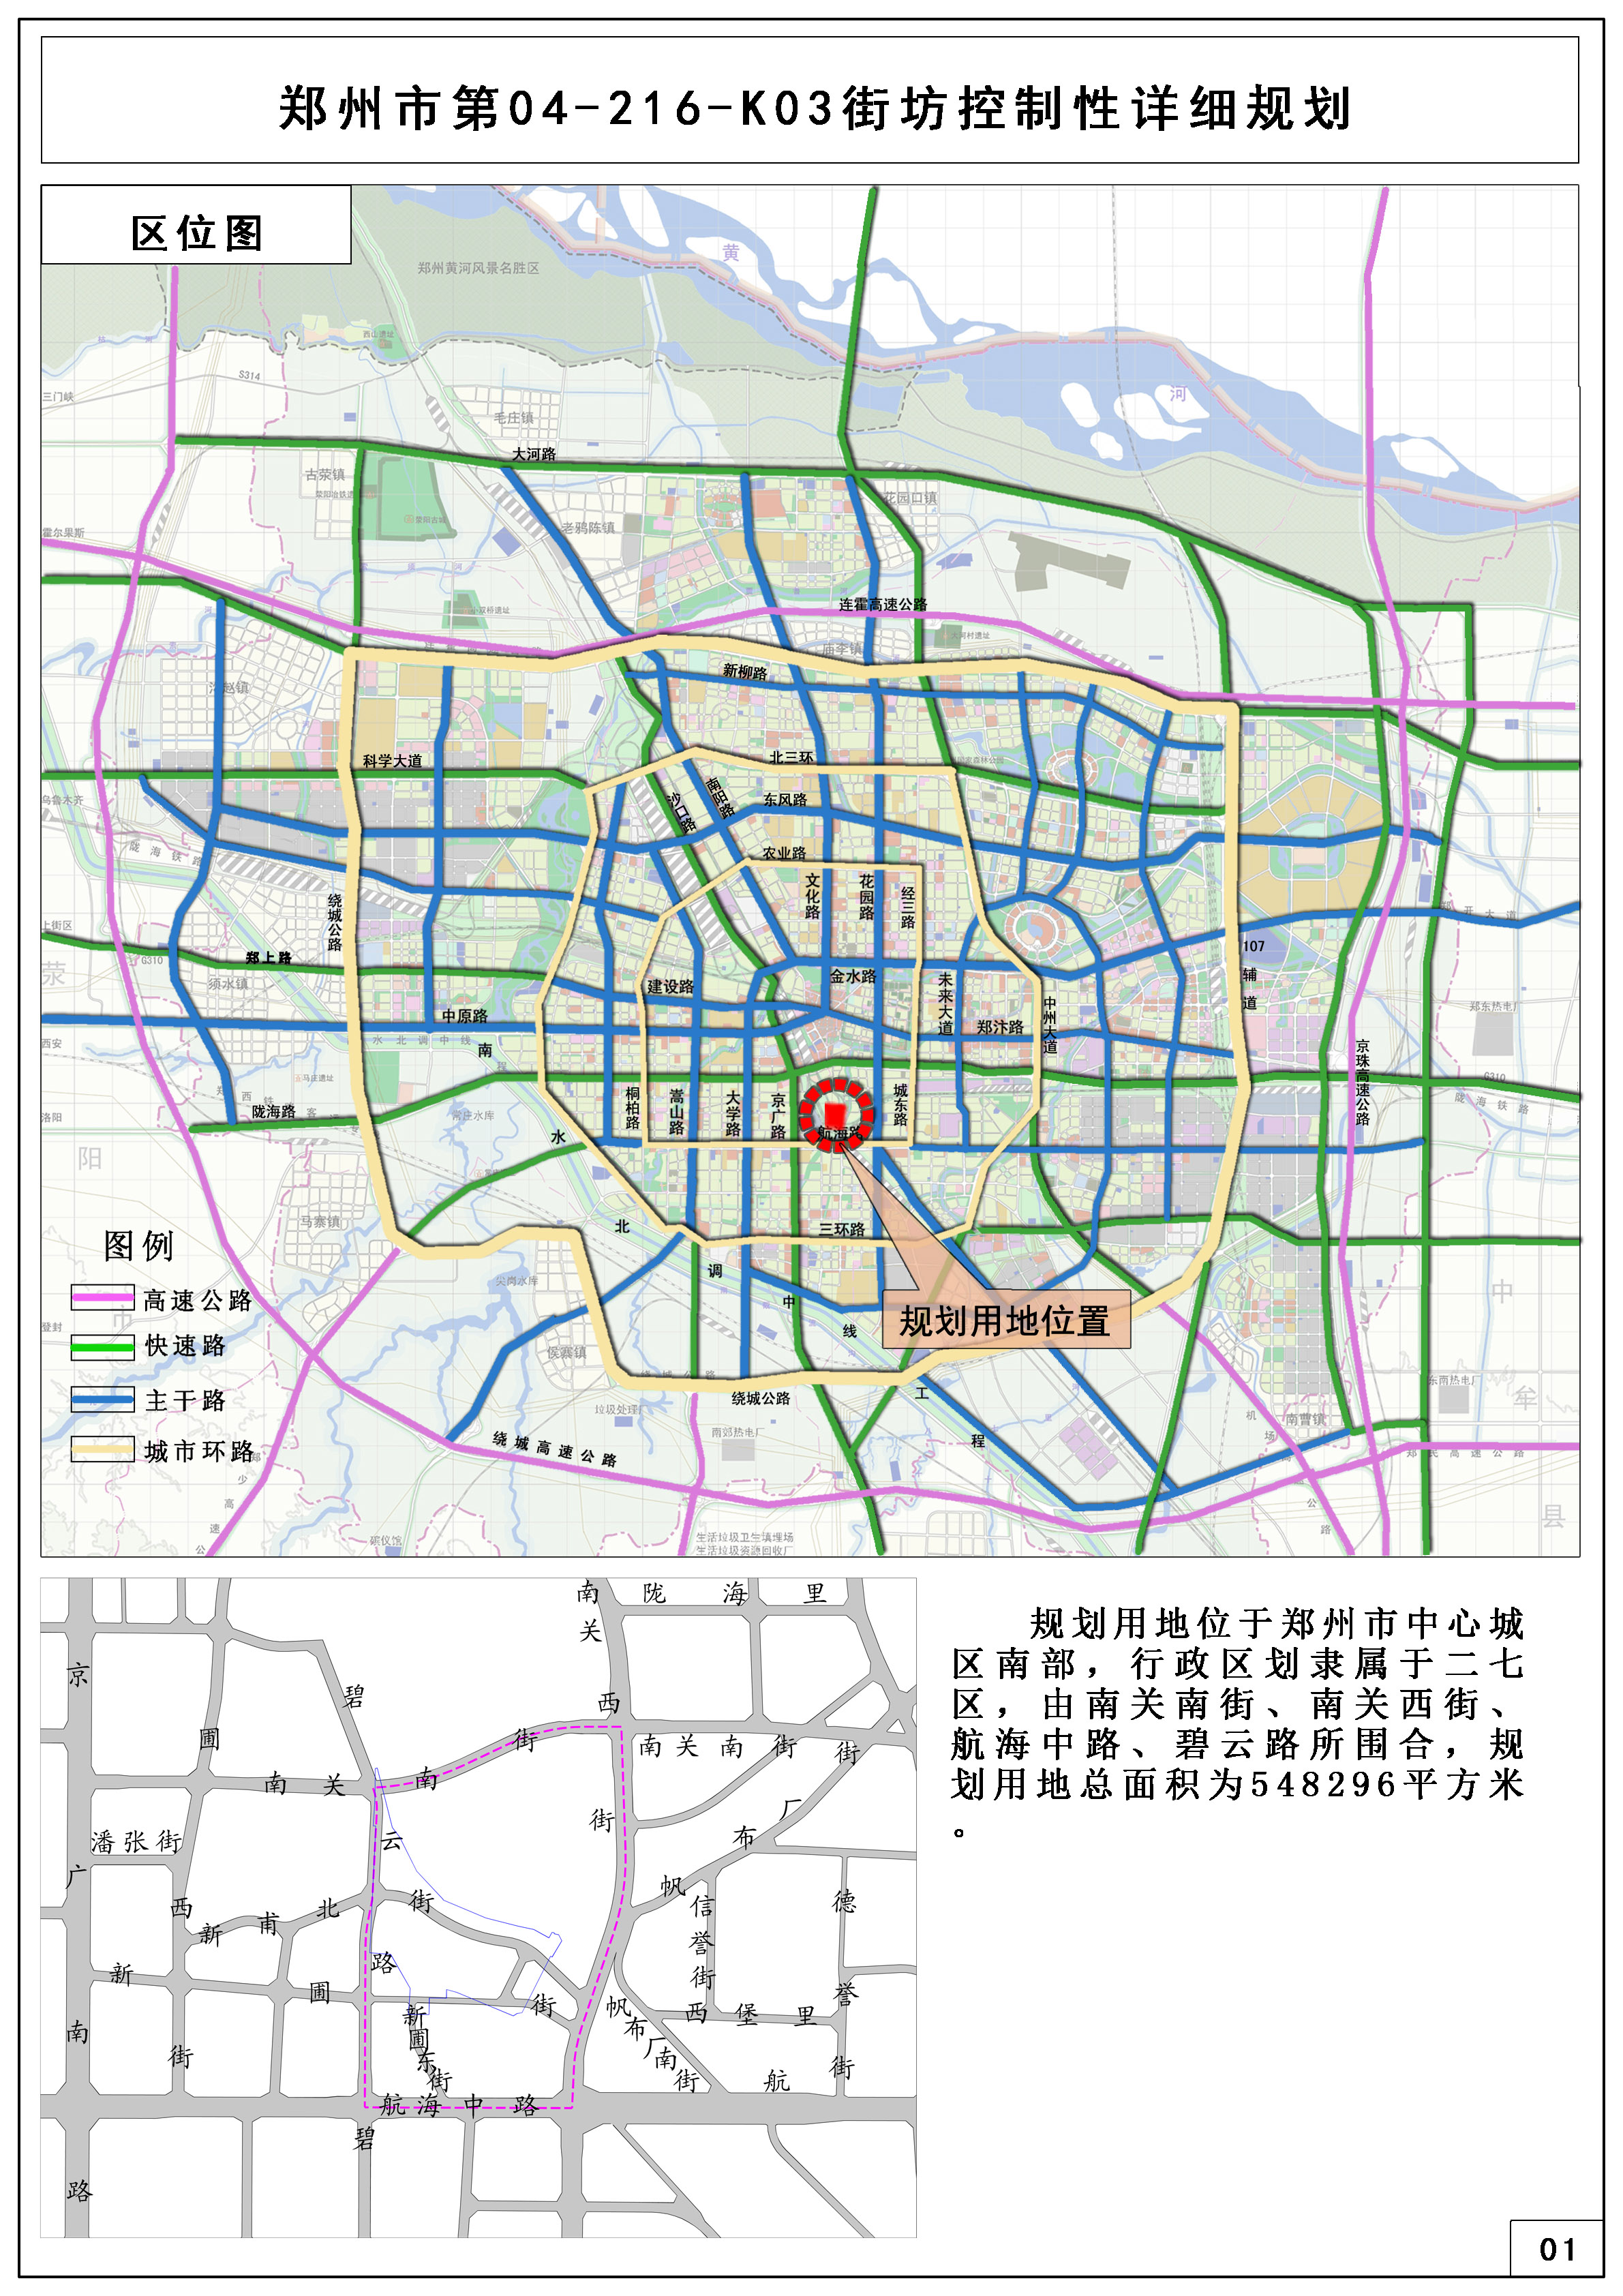 郑州市二七区82244亩土地规划公示详情